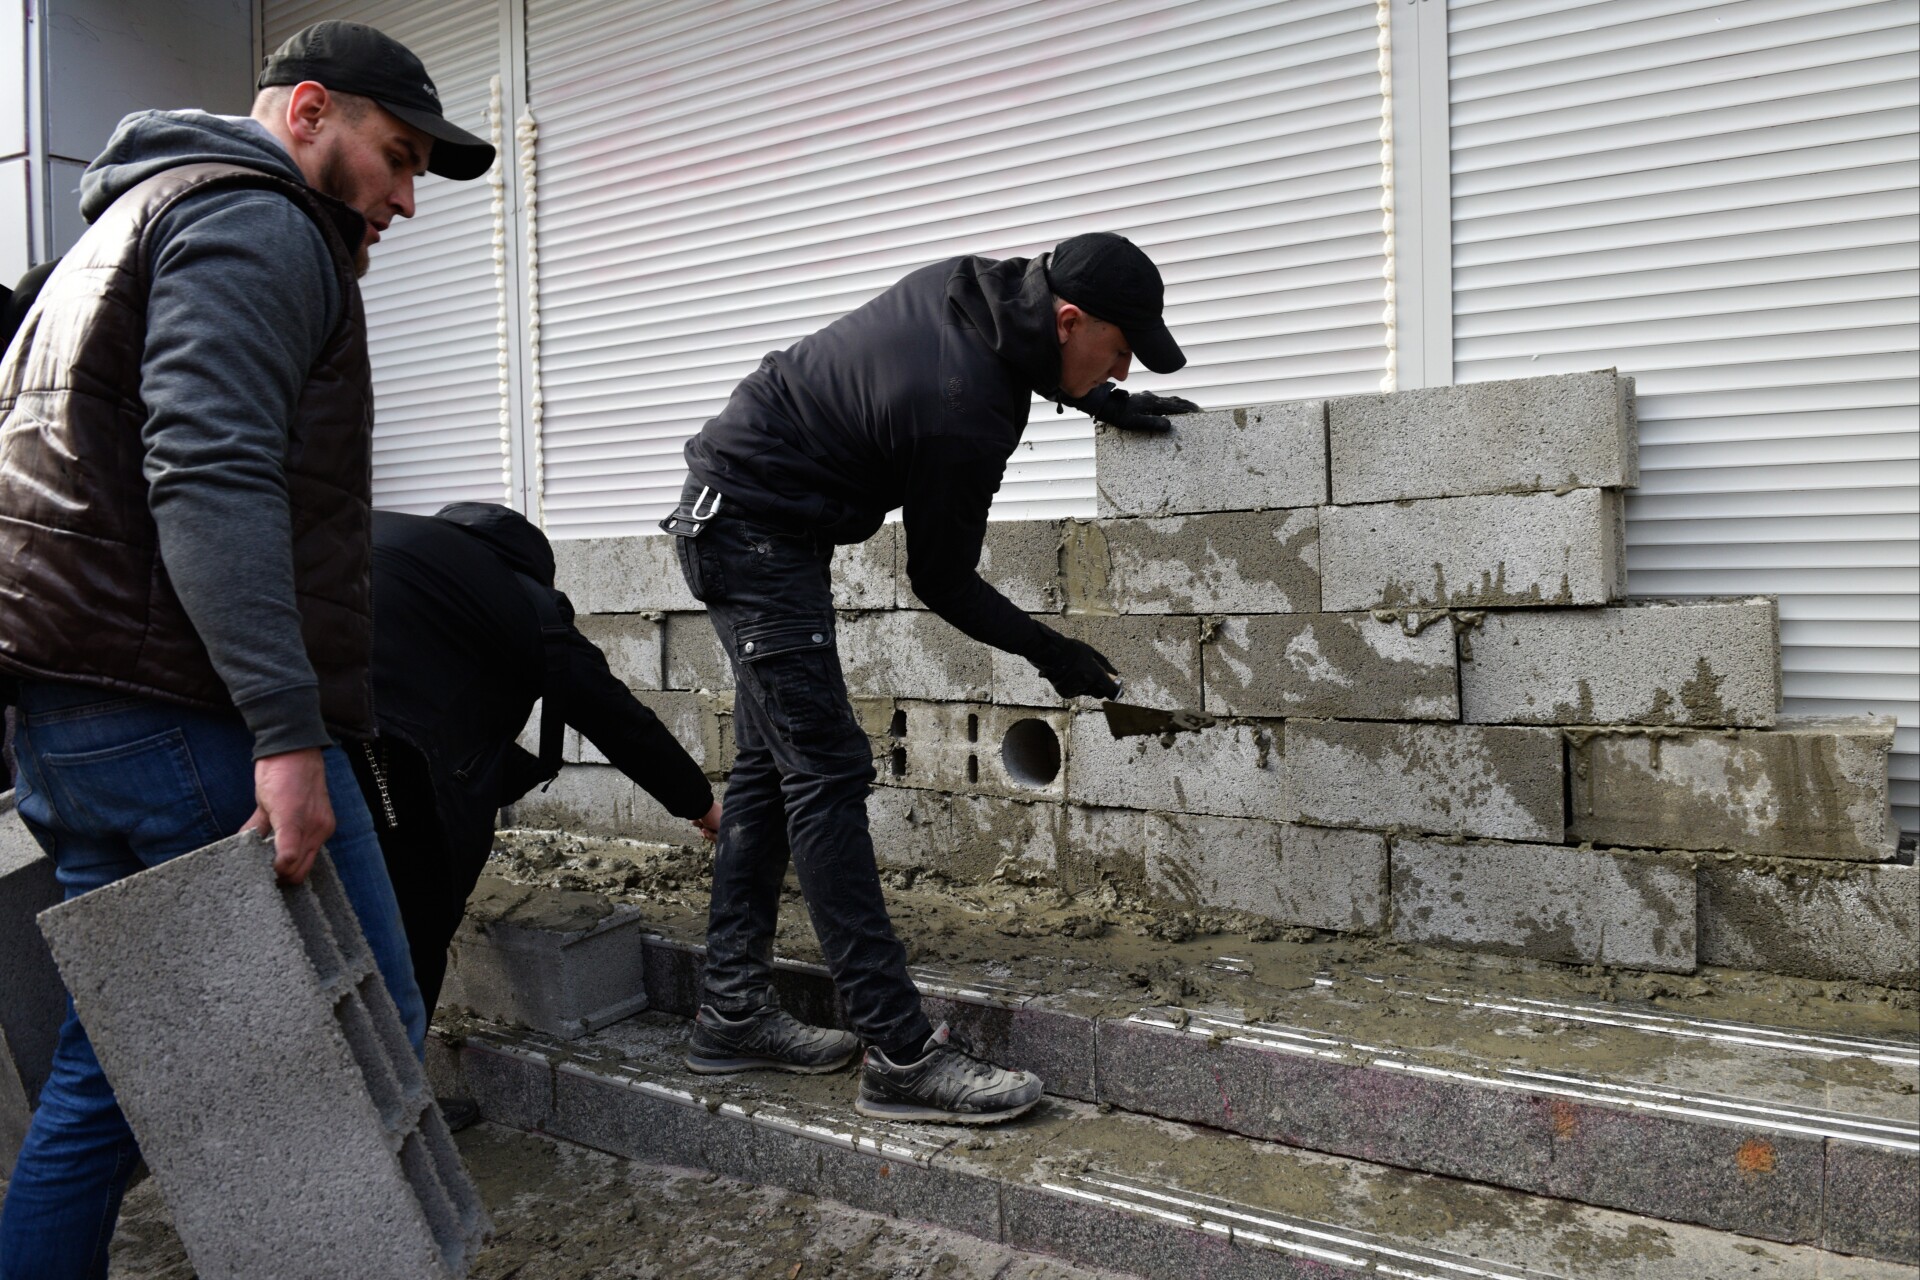 Остановки в Белгороде начали укреплять для защиты жителей от обстрелов - власти